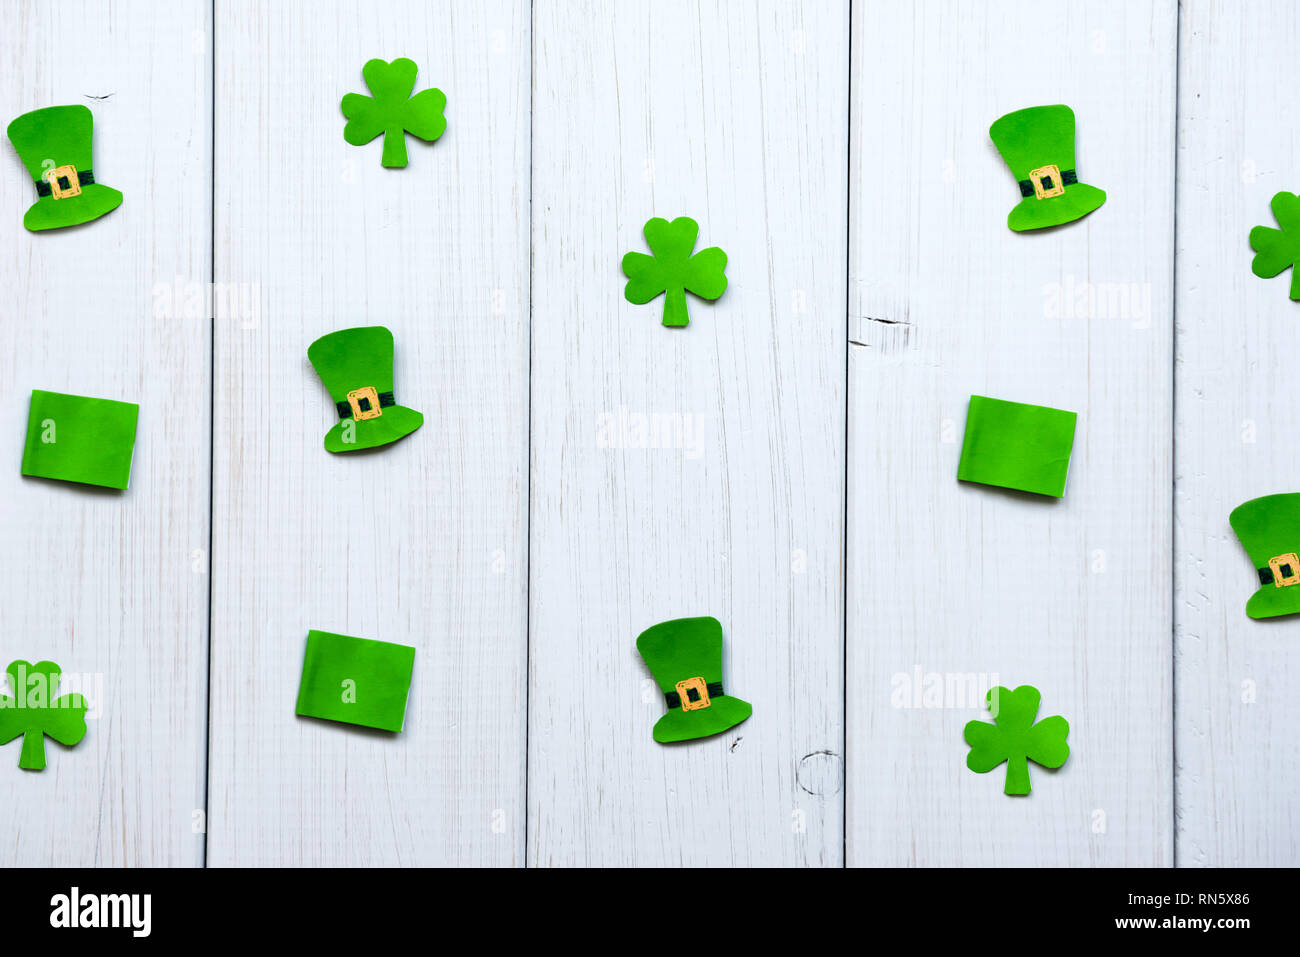 Happy St. Patrick's Day. Handwerk Papier Dekorationen in Form von leprechaun hat, Flaggen und shamrock Blätter auf einem grauen Hintergrund Holz Stockfoto